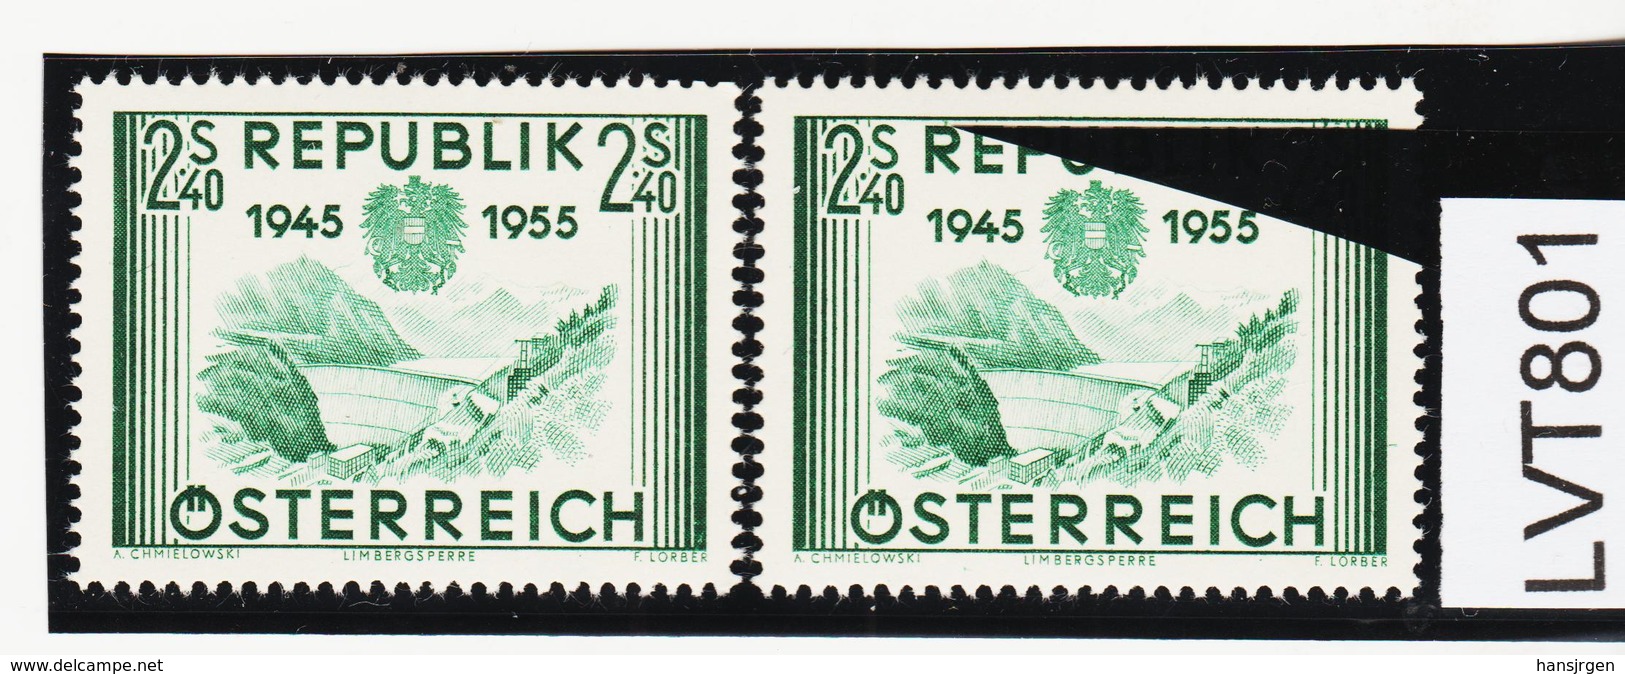 LVT801 ÖSTERREICH 1955 Michl 1016 PLATTENFEHLER FARBSTRICH über "R" ** Postfrisch - Abarten & Kuriositäten